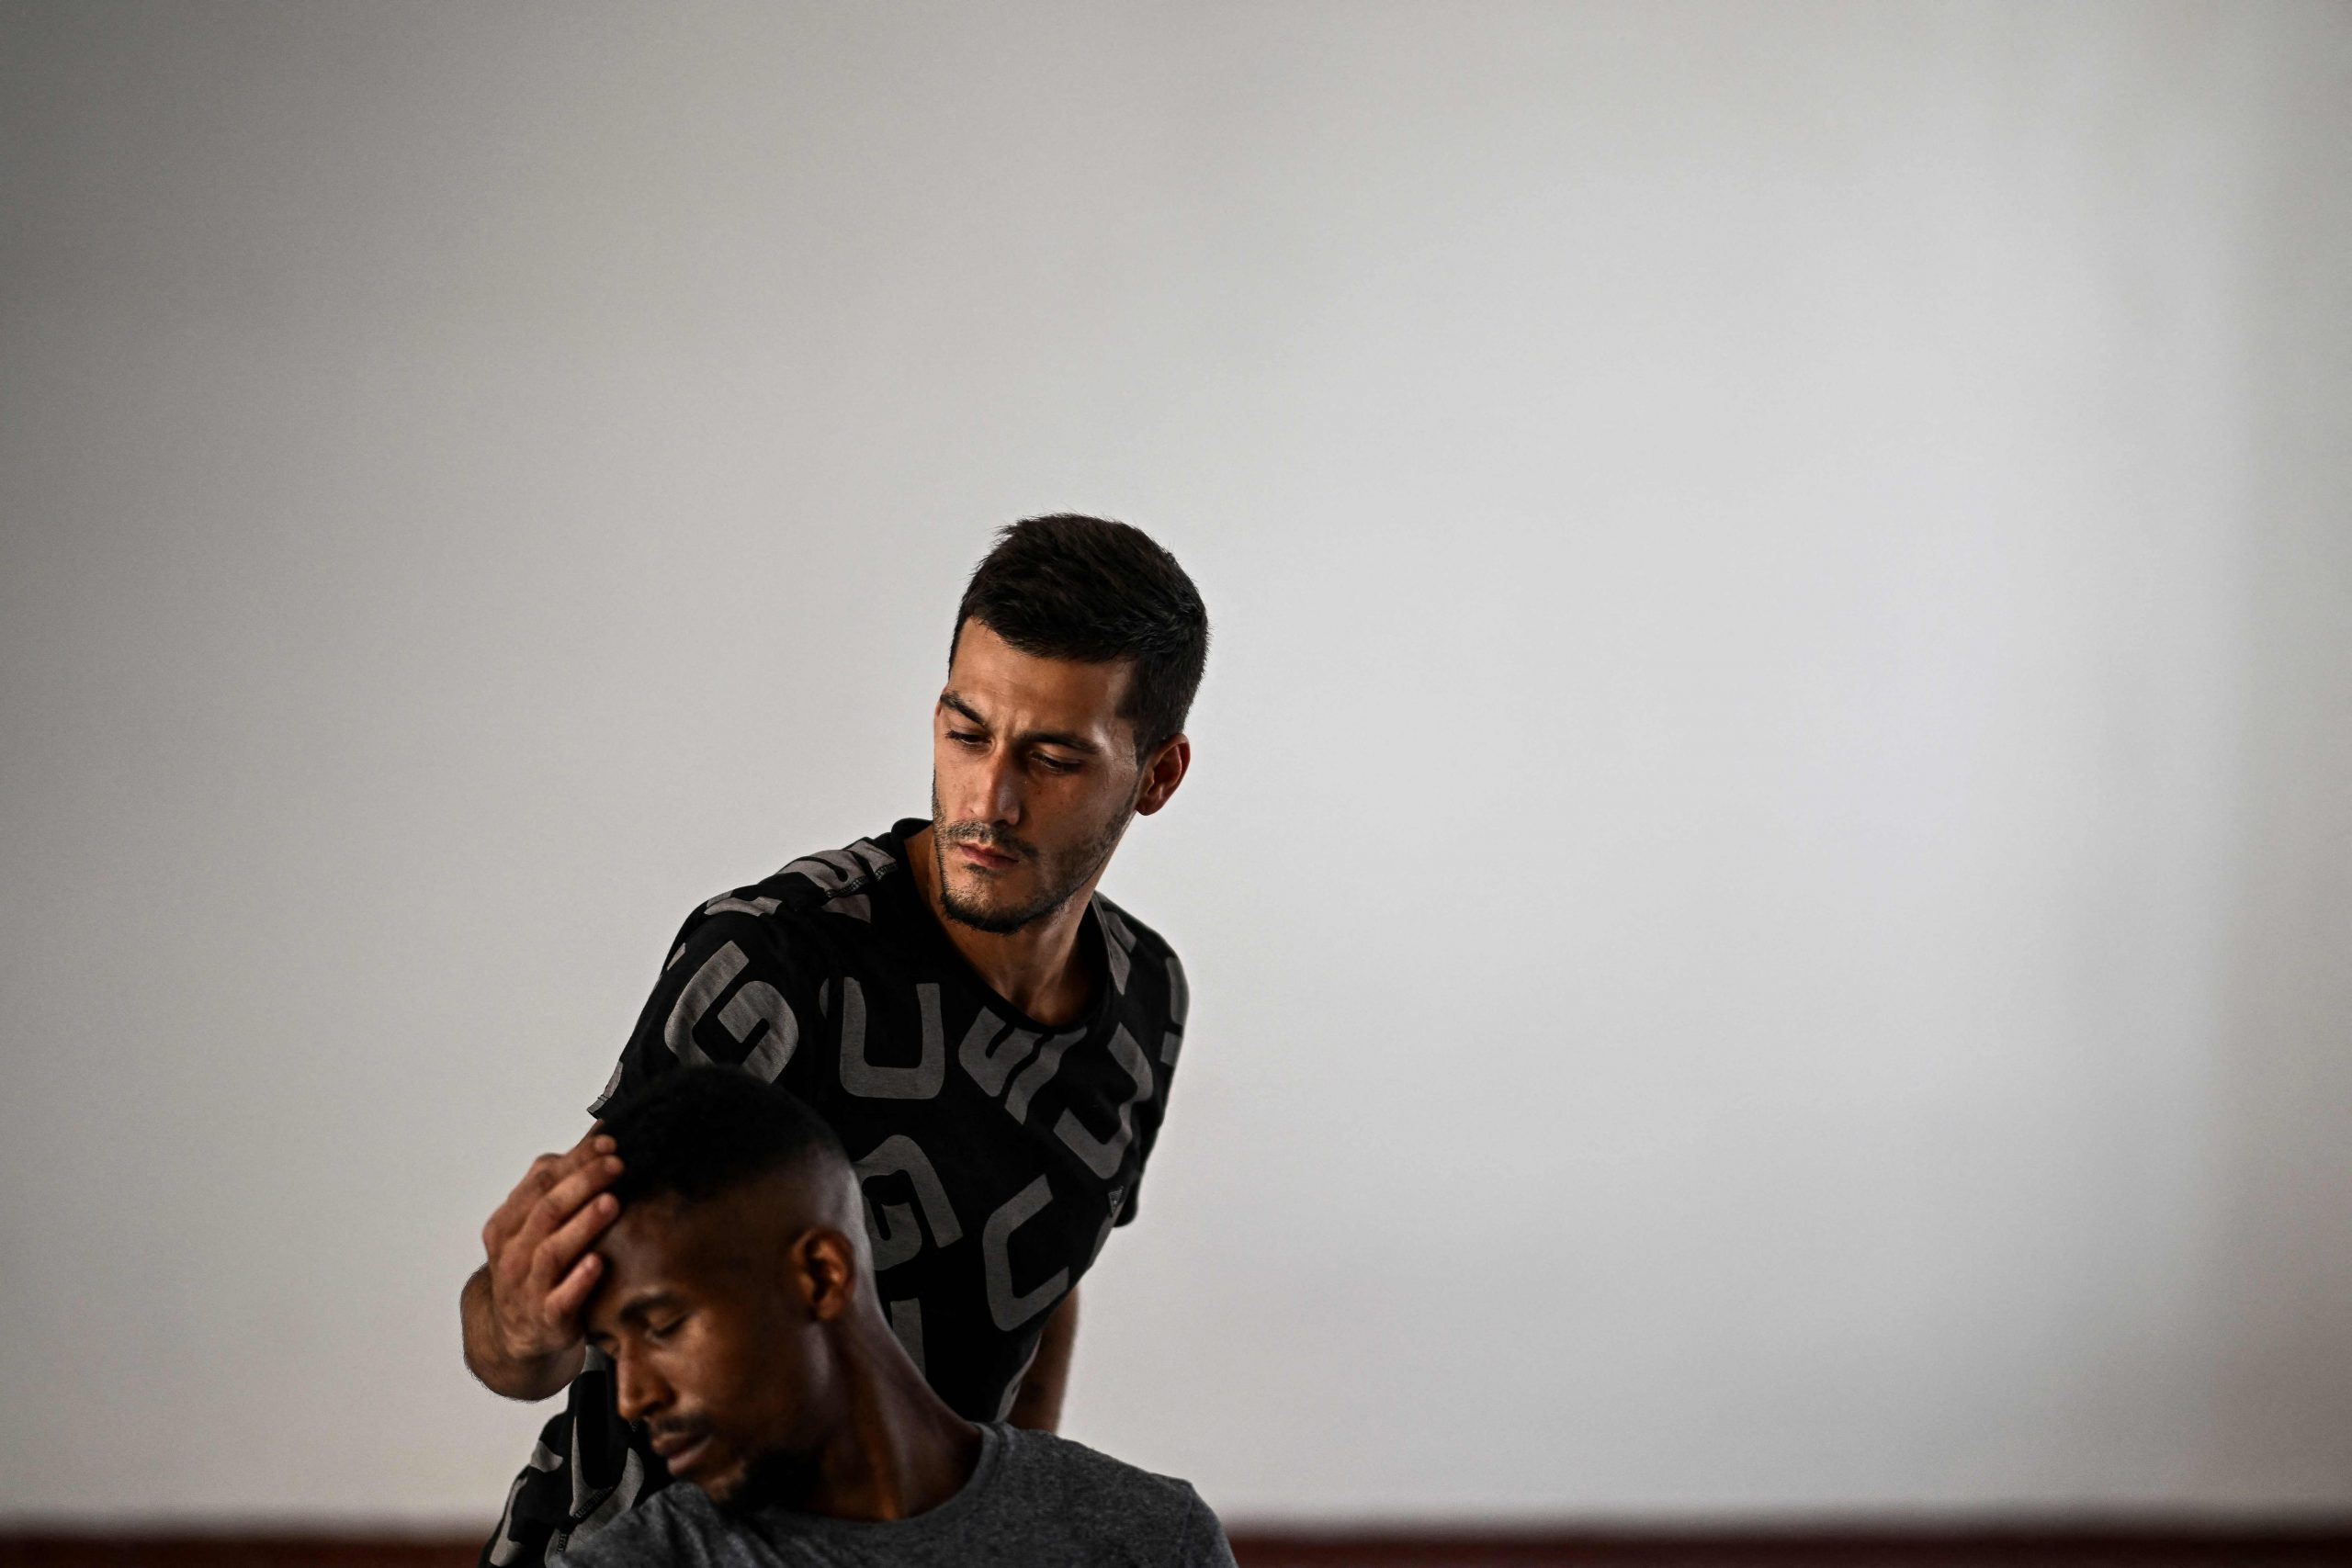 葡萄牙舞蹈项目为囚犯带来希望